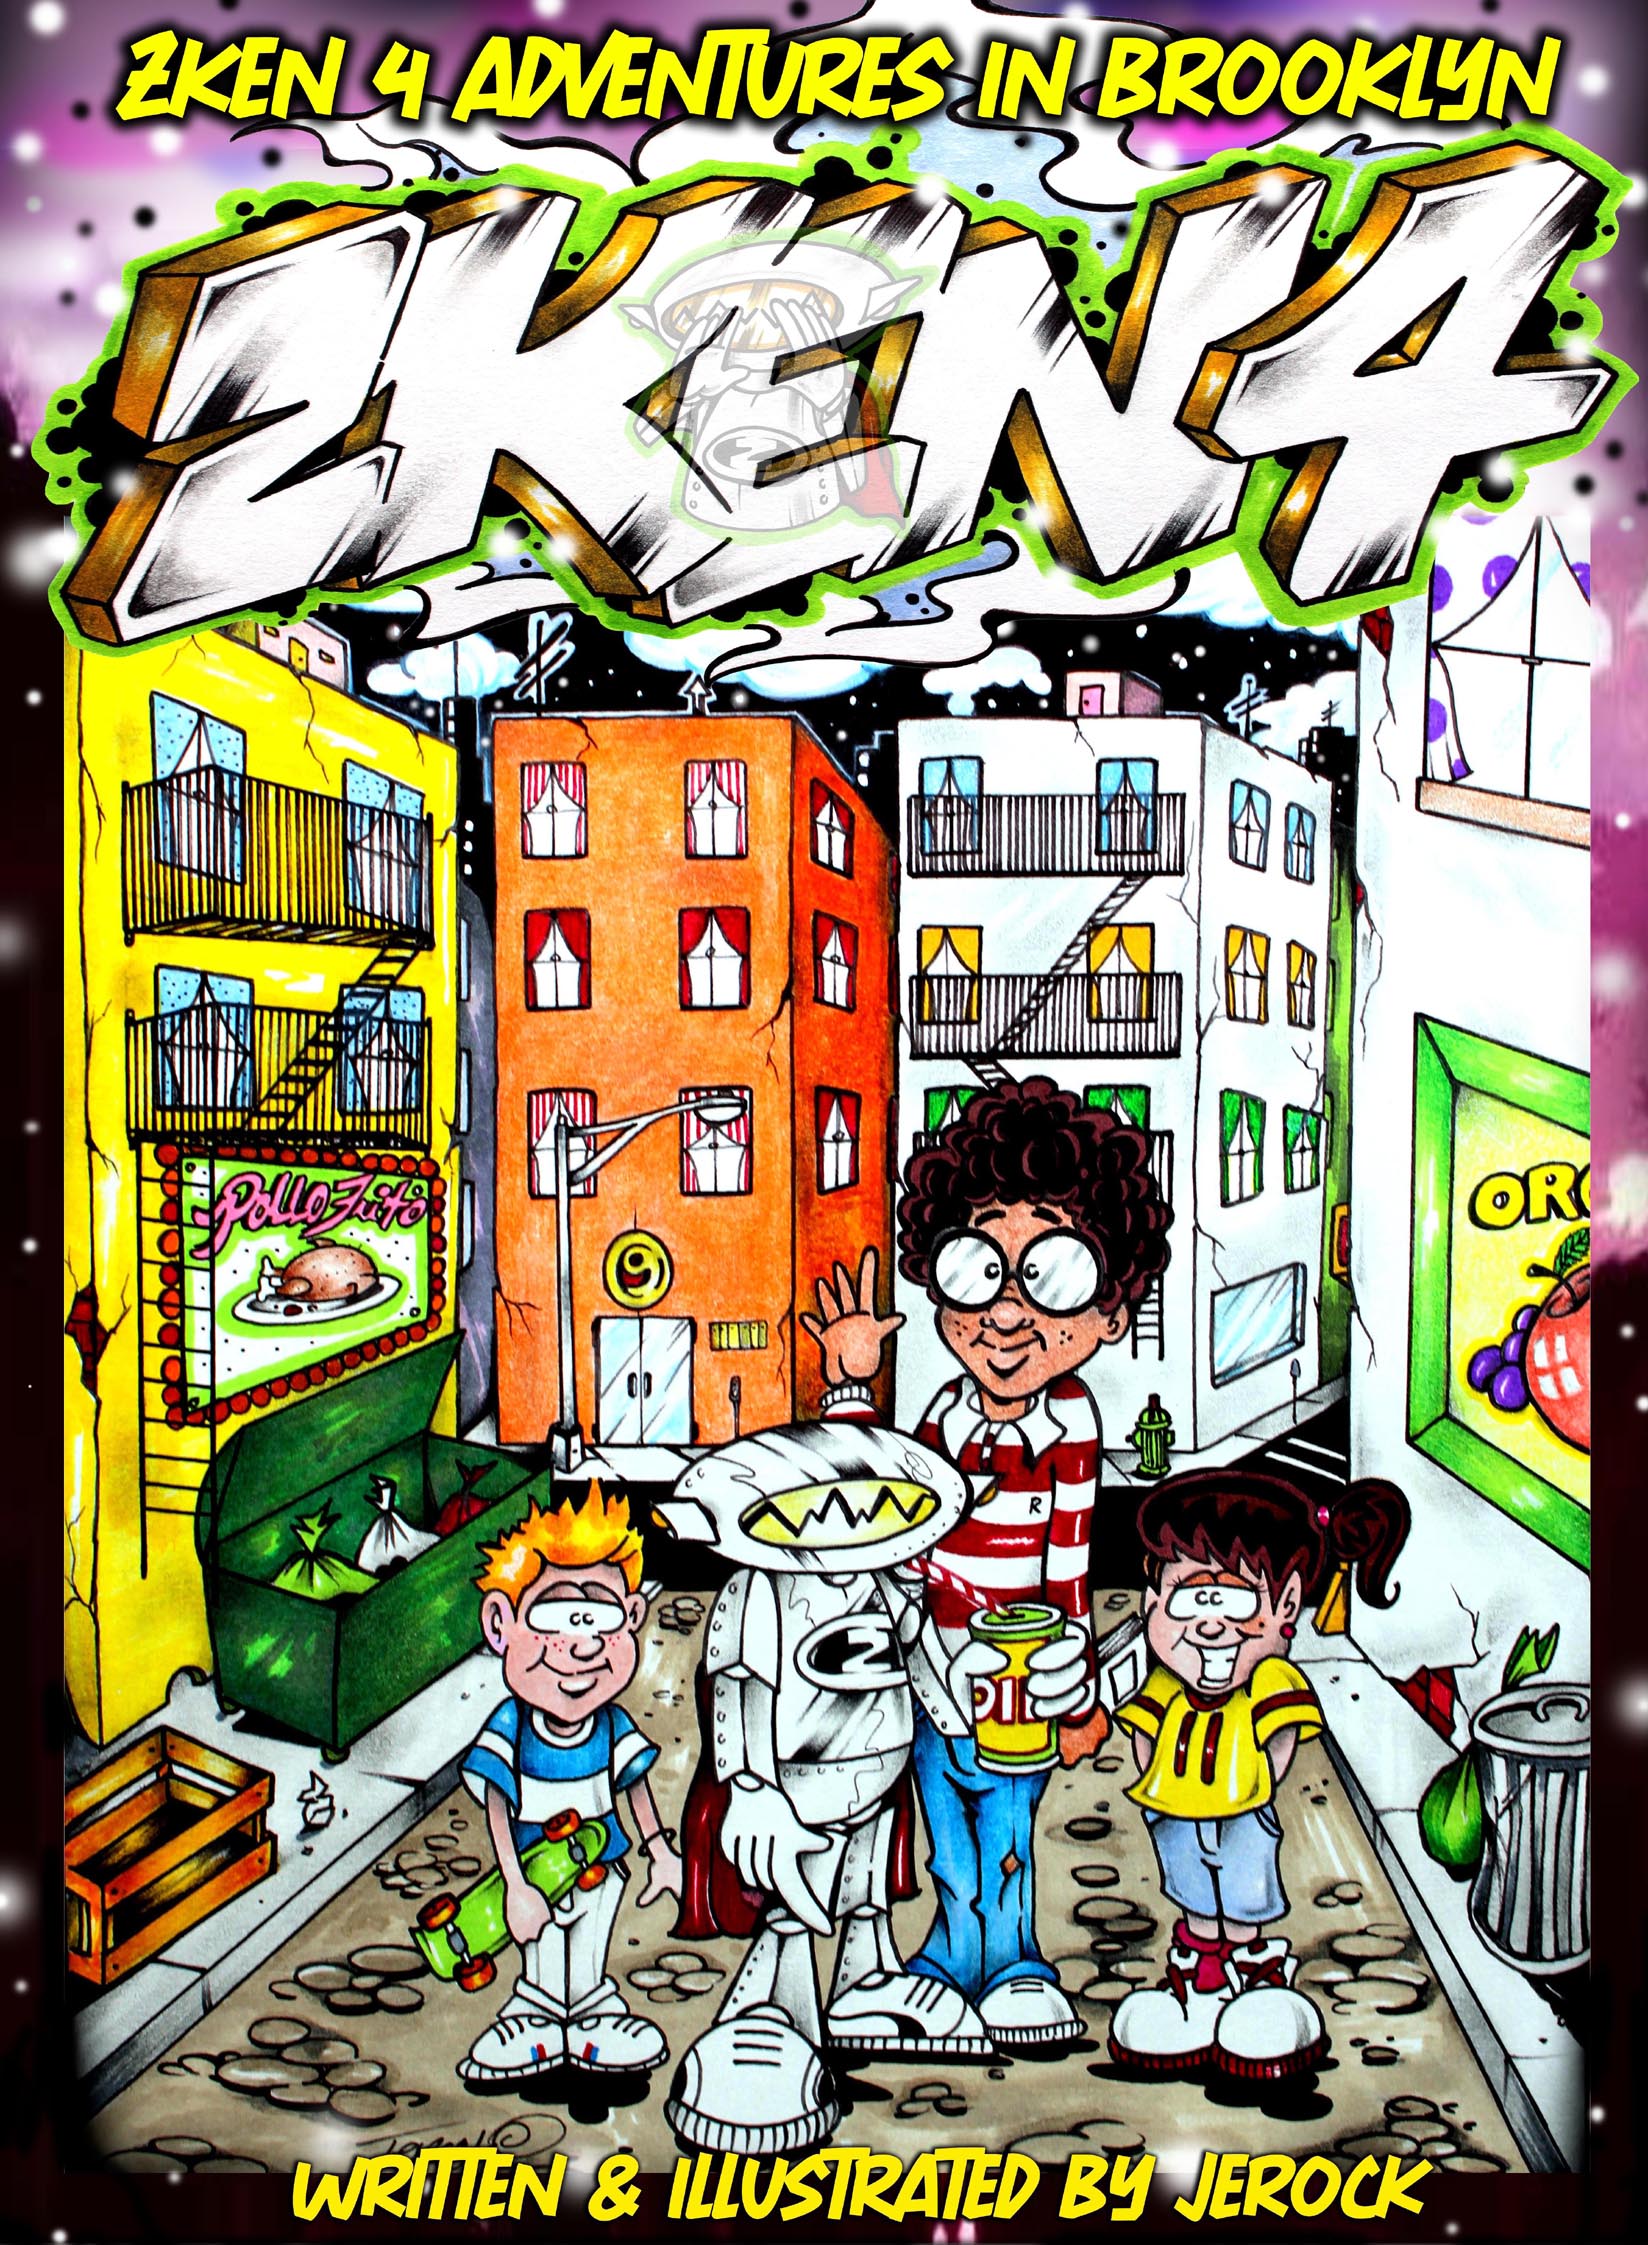 FREE: Zken 4 Adventures in Brooklyn by Jercok by jerock